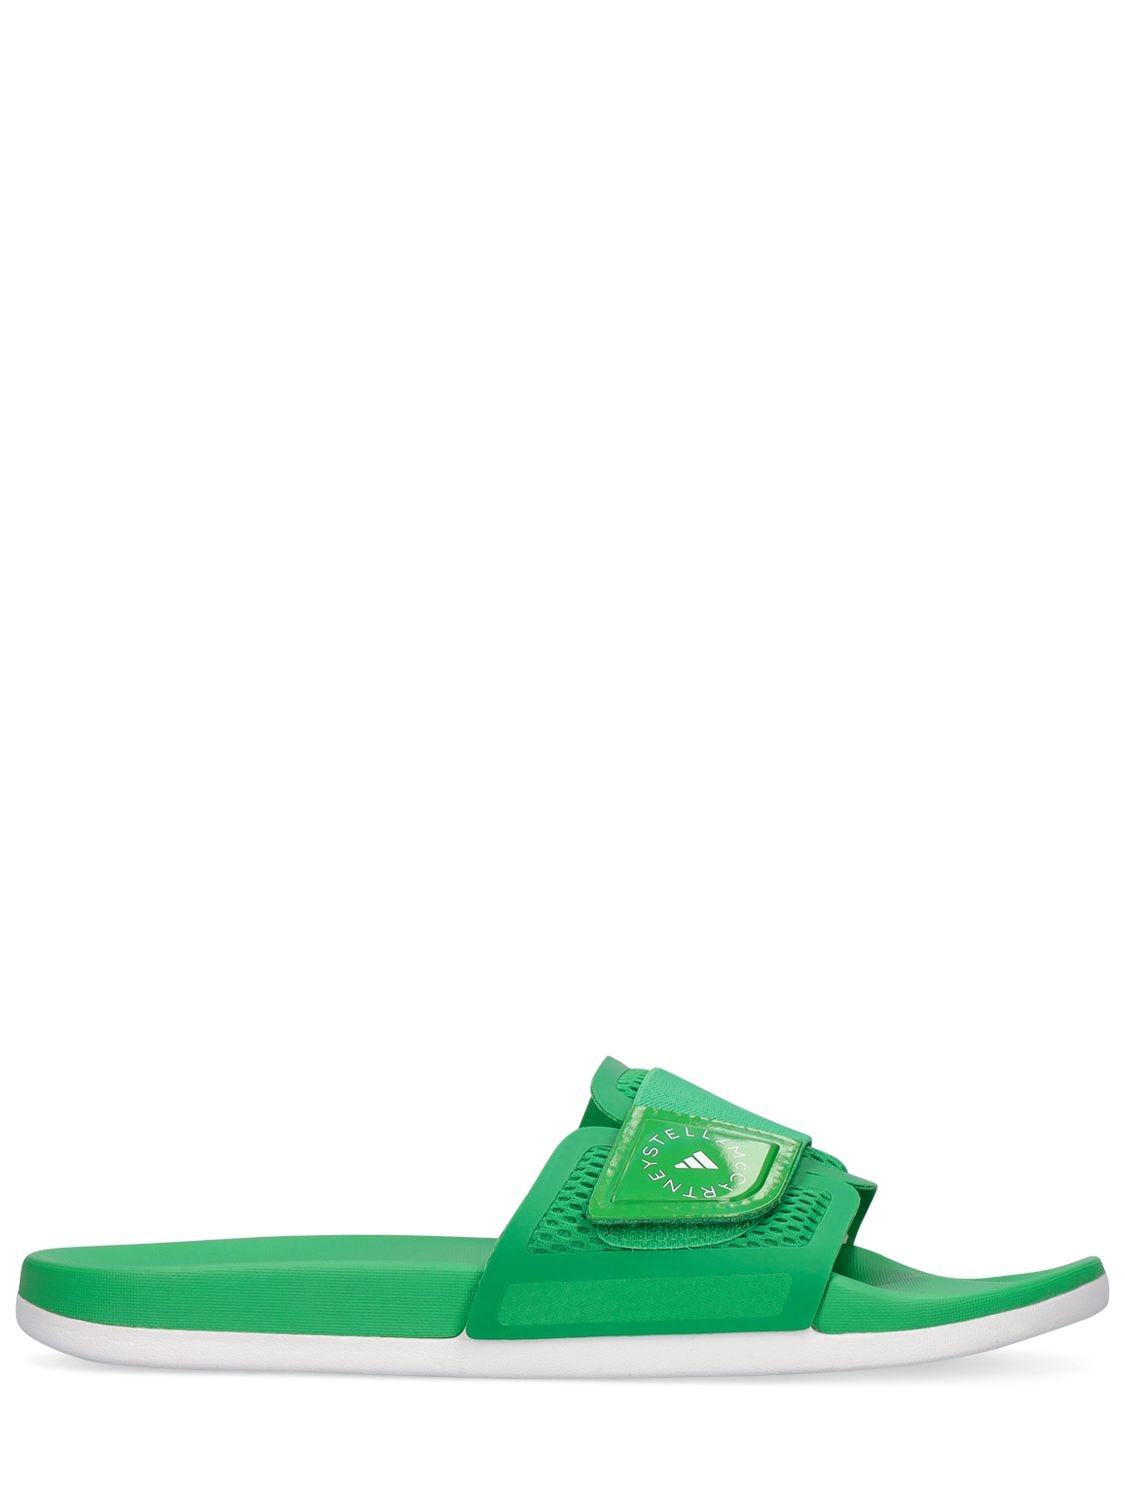 Asmc Slide Sandals